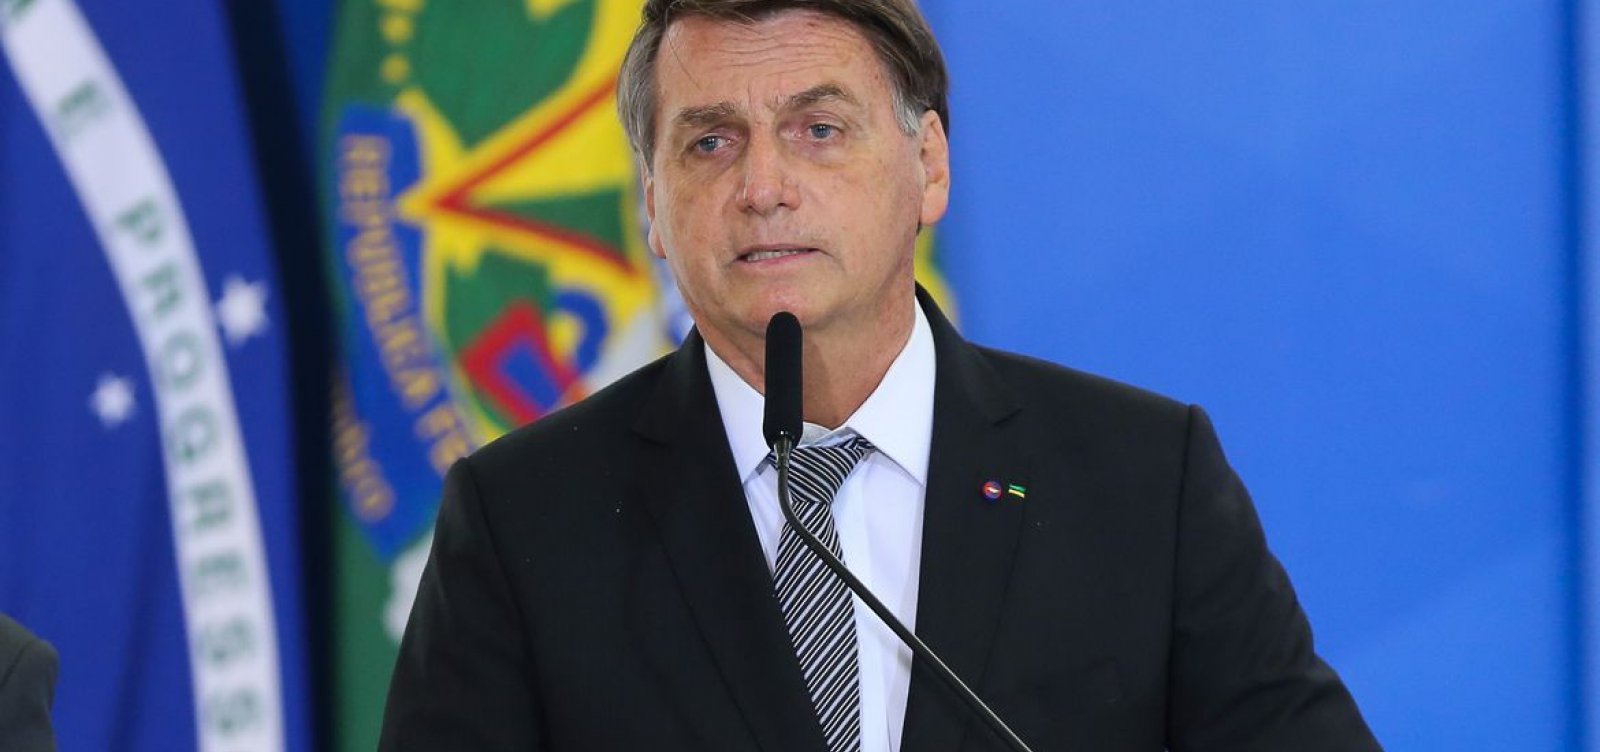 Vídeo: "Eu sou o melhor? Não. Tem milhares de pessoas melhores que eu”, diz Bolsonaro sobre 2022